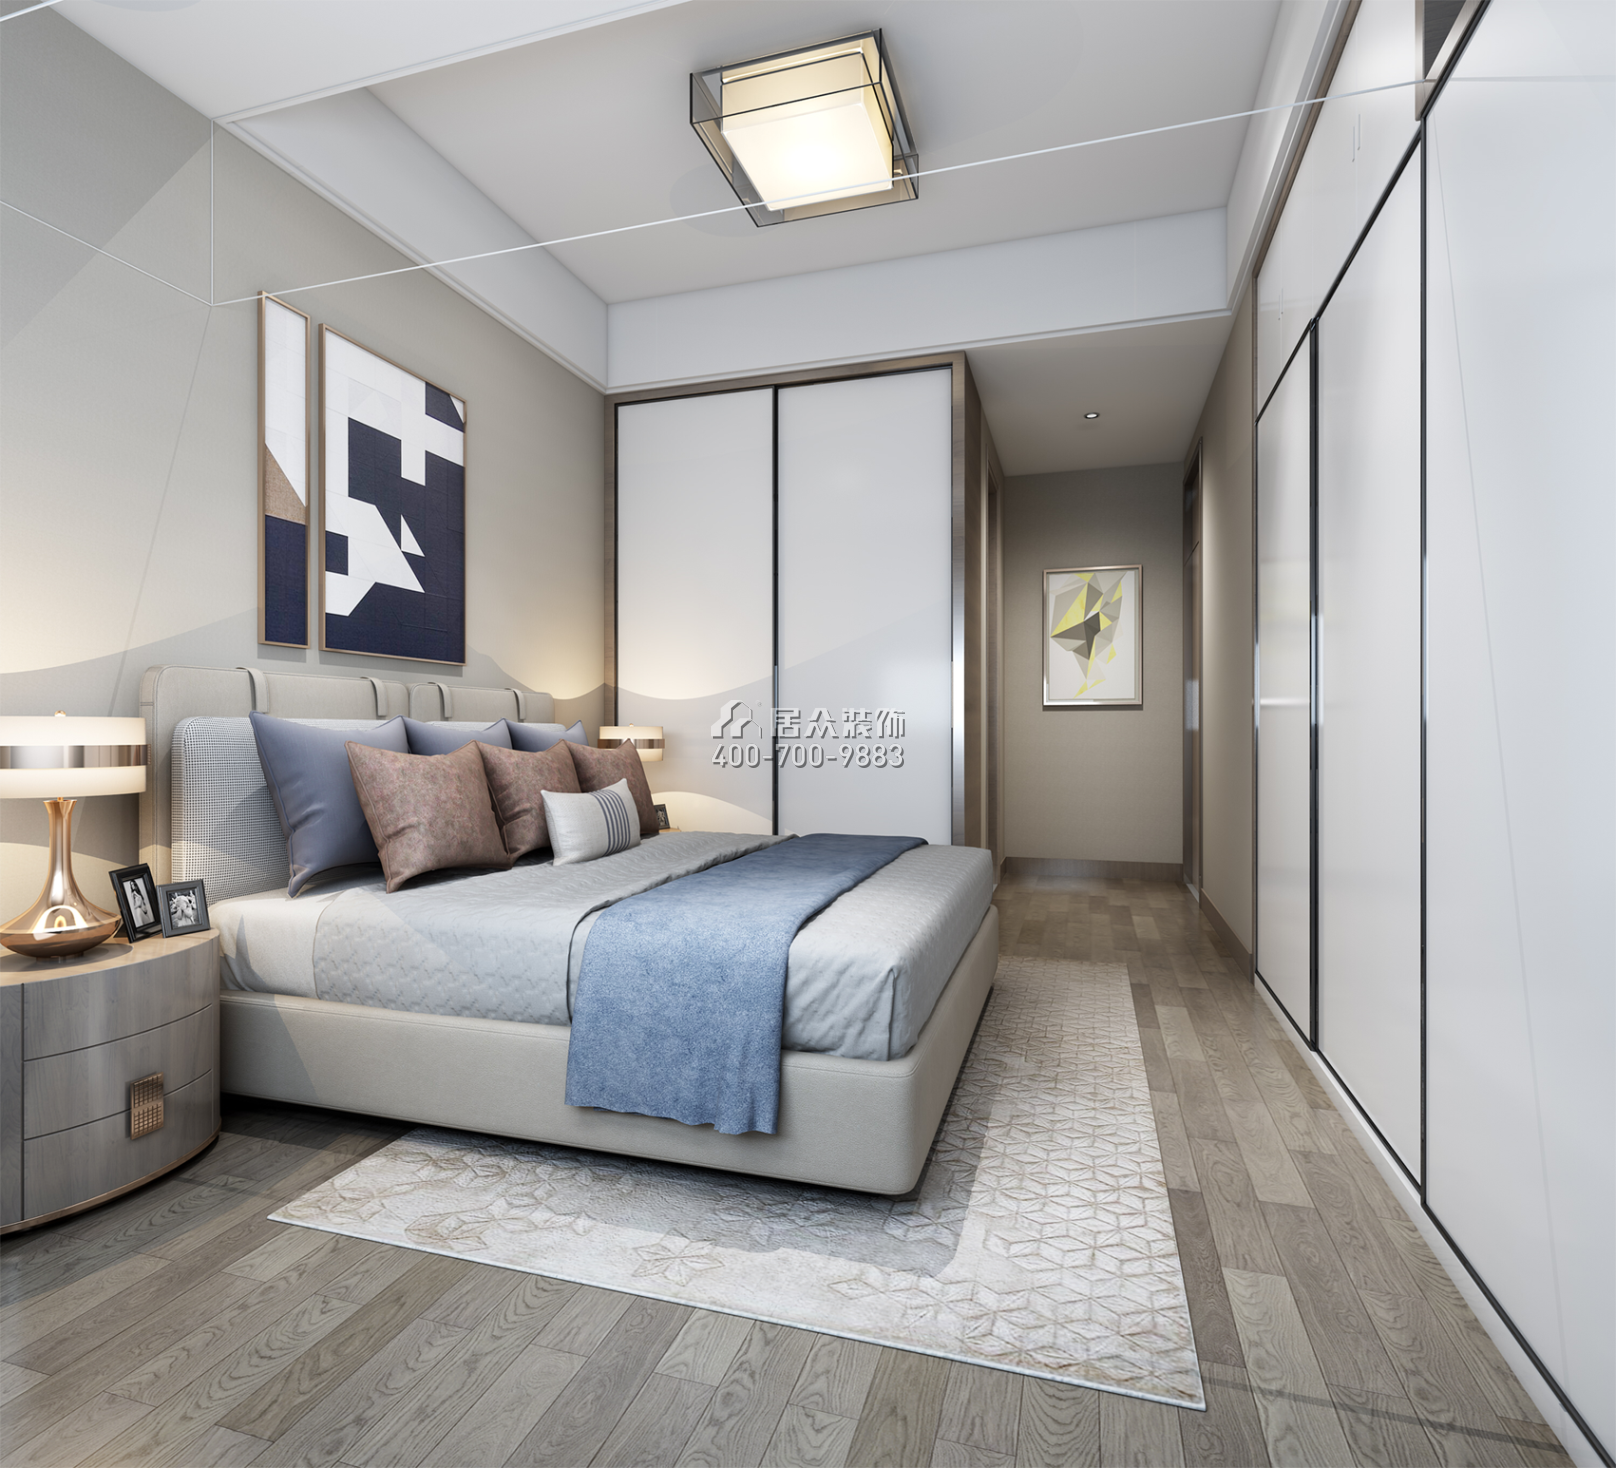 華潤城一期88平方米現代簡約風格平層戶型臥室裝修效果圖